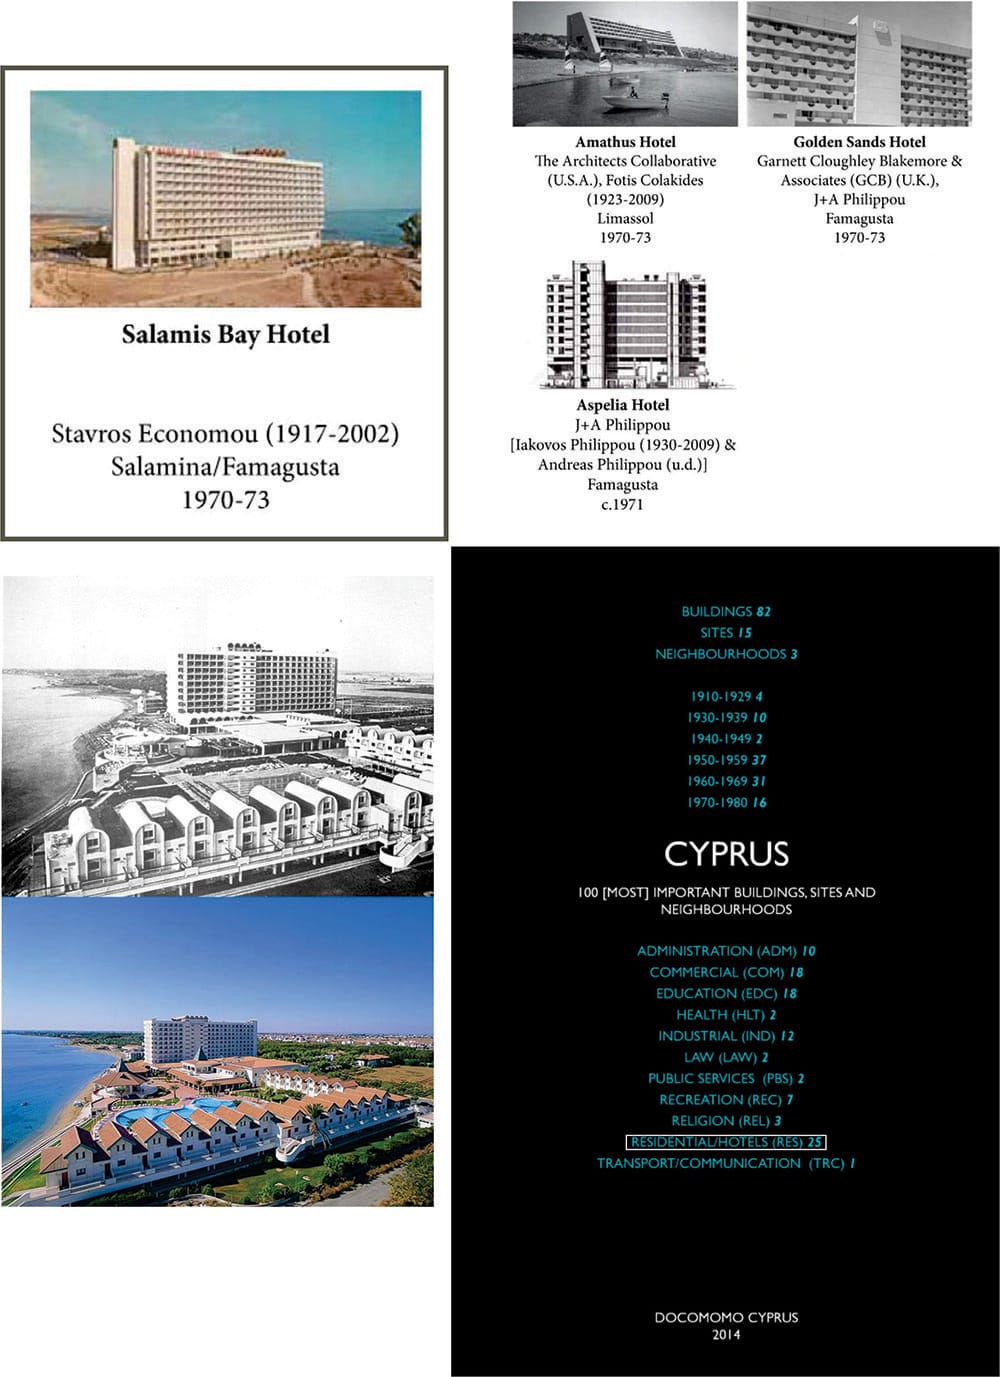 Το Salamis Bay Hotel, όπως δημοσιεύτηκε στη λίστα του κυπριακού do.co.mo.mo μαζί με άλλα τρία σημαντικά παραδείγματα μοντέρνας ξενοδοχειακής αρχιτεκτονικής καθώς και σύγκριση του συγκροτήματος πριν και μετά τις αχρονολόγητες (μετά το 1974) παρεμβάσεις.